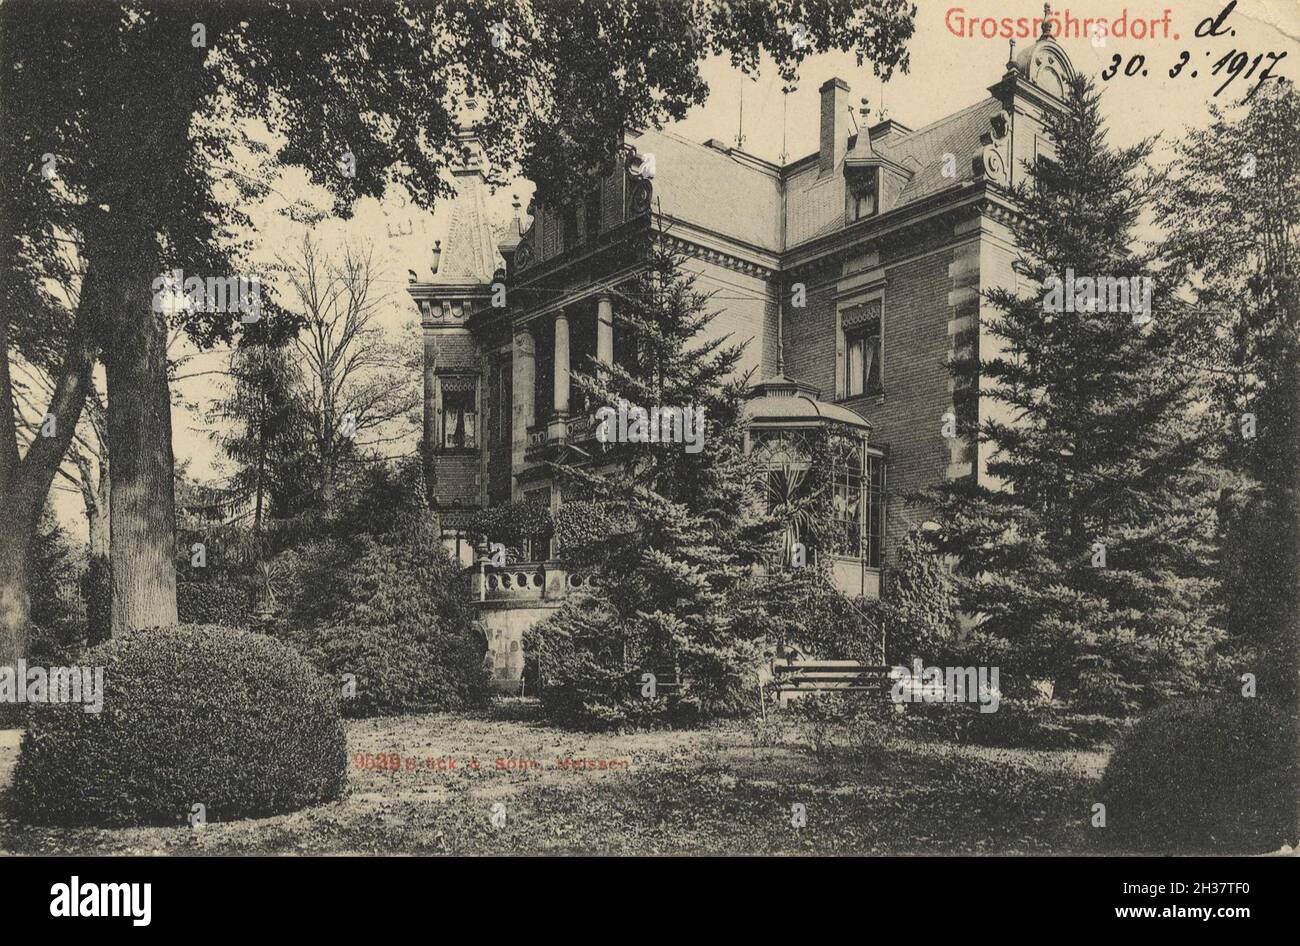 Grossröhrsdorf, Kleinstadt im Landkreis Bautzen, Sachsen, Deutschland, Ansicht von CA 1910, digitale Reproduktion einer gemeinfreien Postkarte Banque D'Images